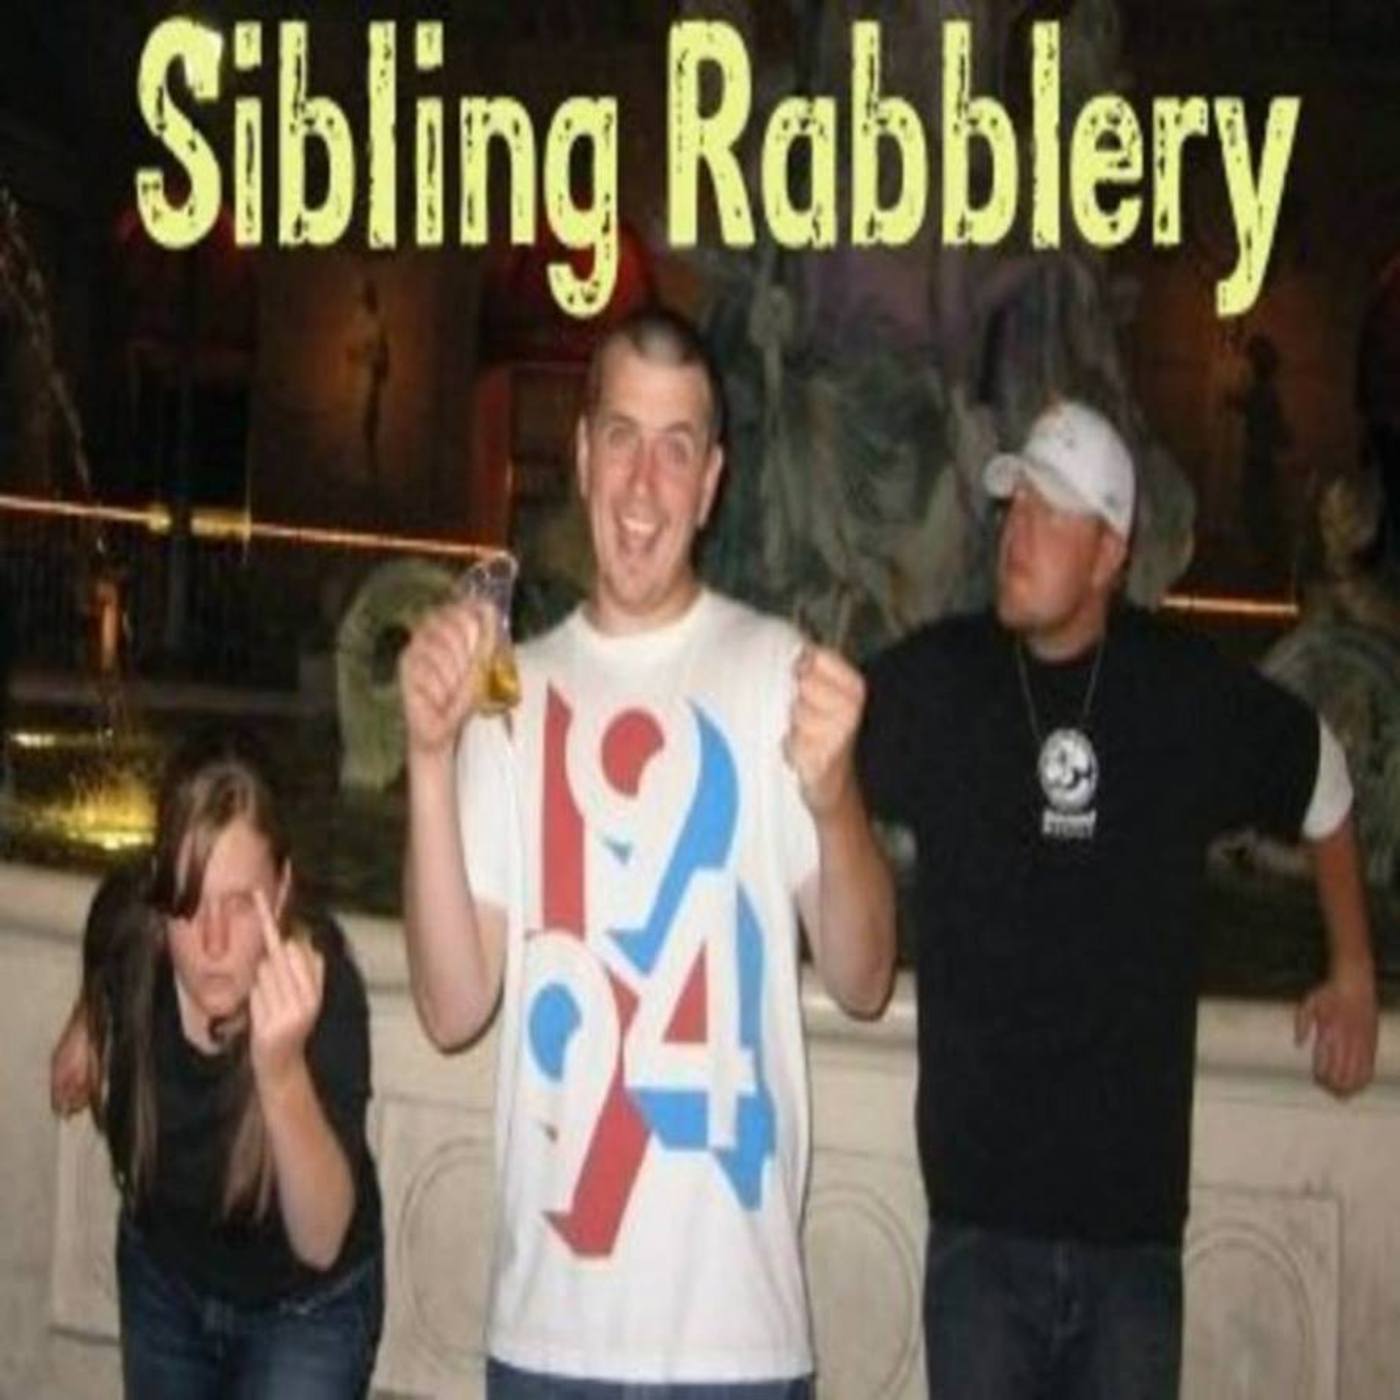 Sibling Rabblery